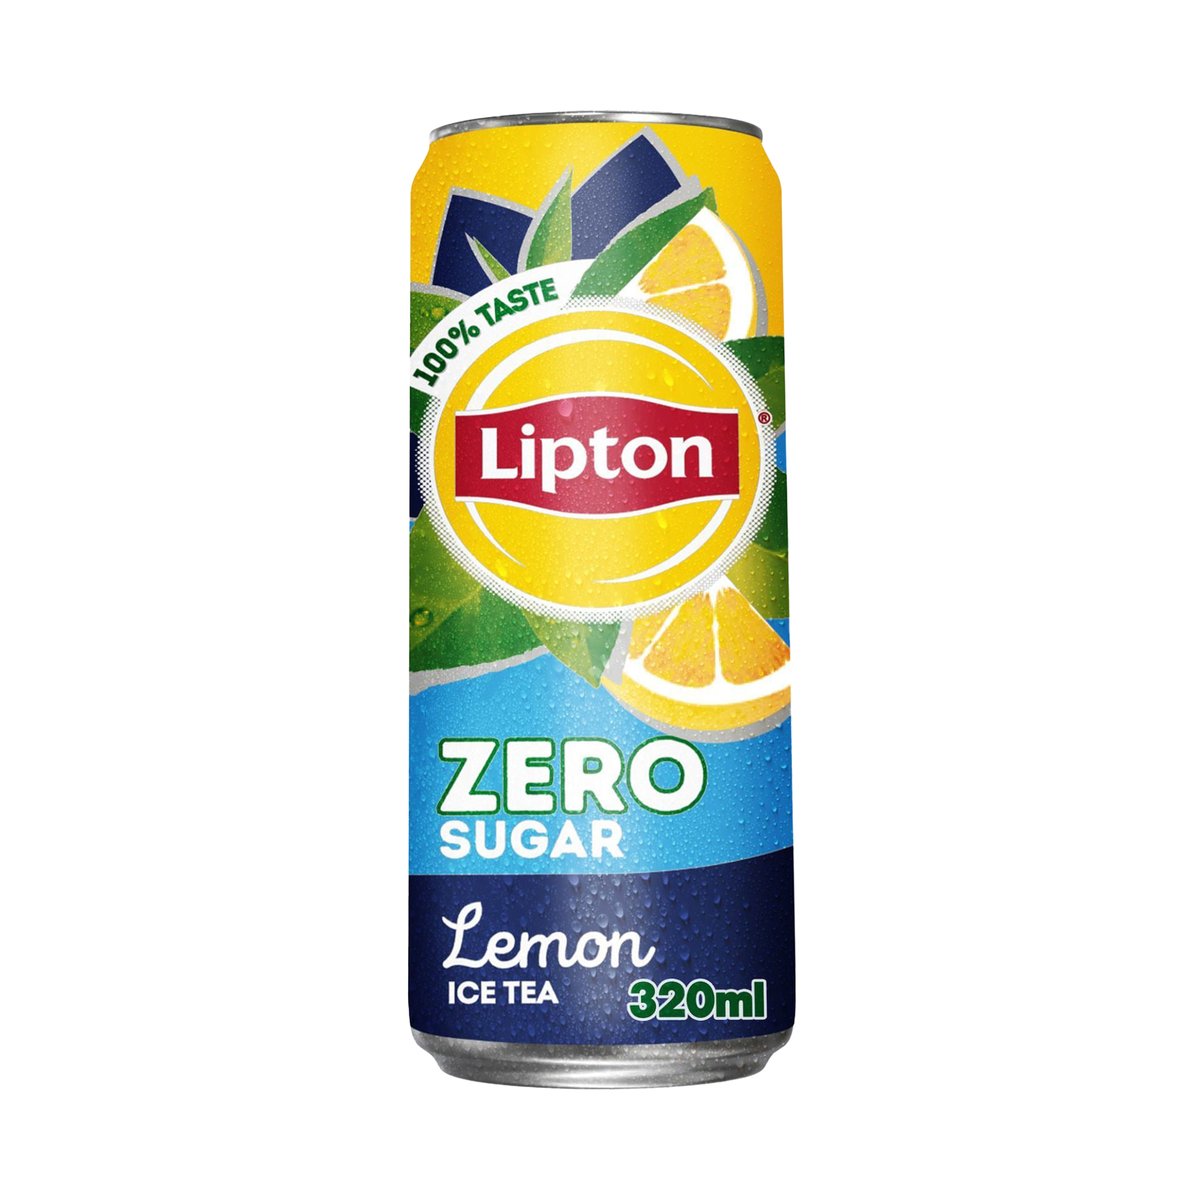 Buy Lipton Zero Sugar Lemon Ice Tea 6 x 320 ml Online at Best Price | Ice Tea | Lulu UAE in UAE